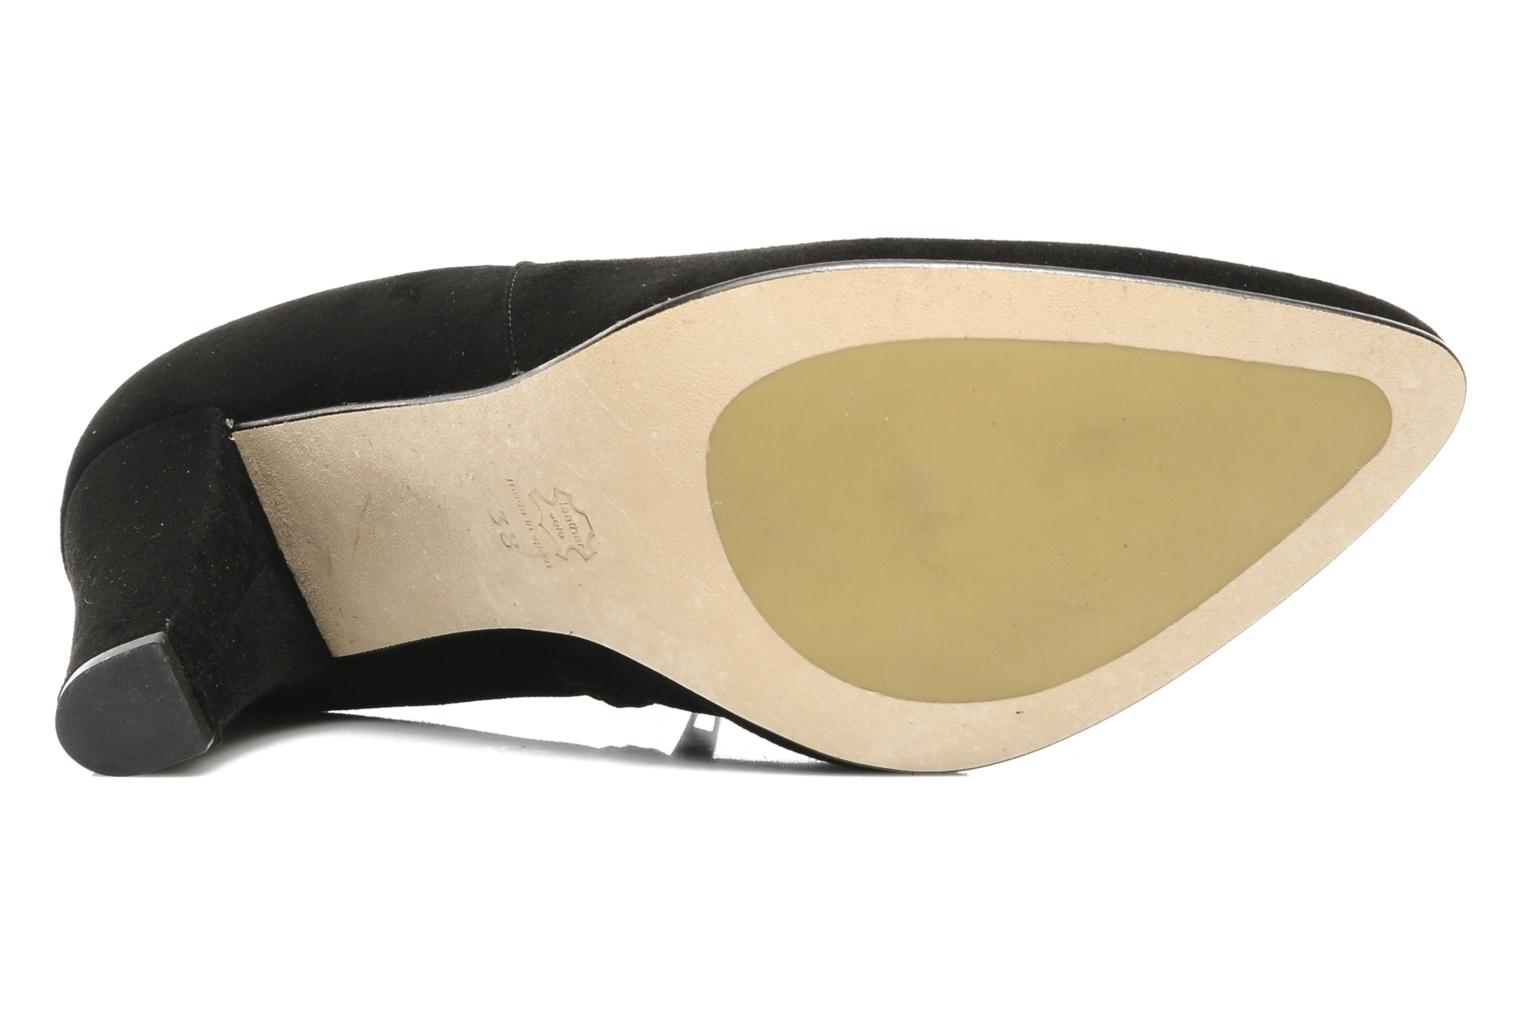 Georgia Rose Kimberly CFT (Black) - Ankle boots chez Sarenza (140351)